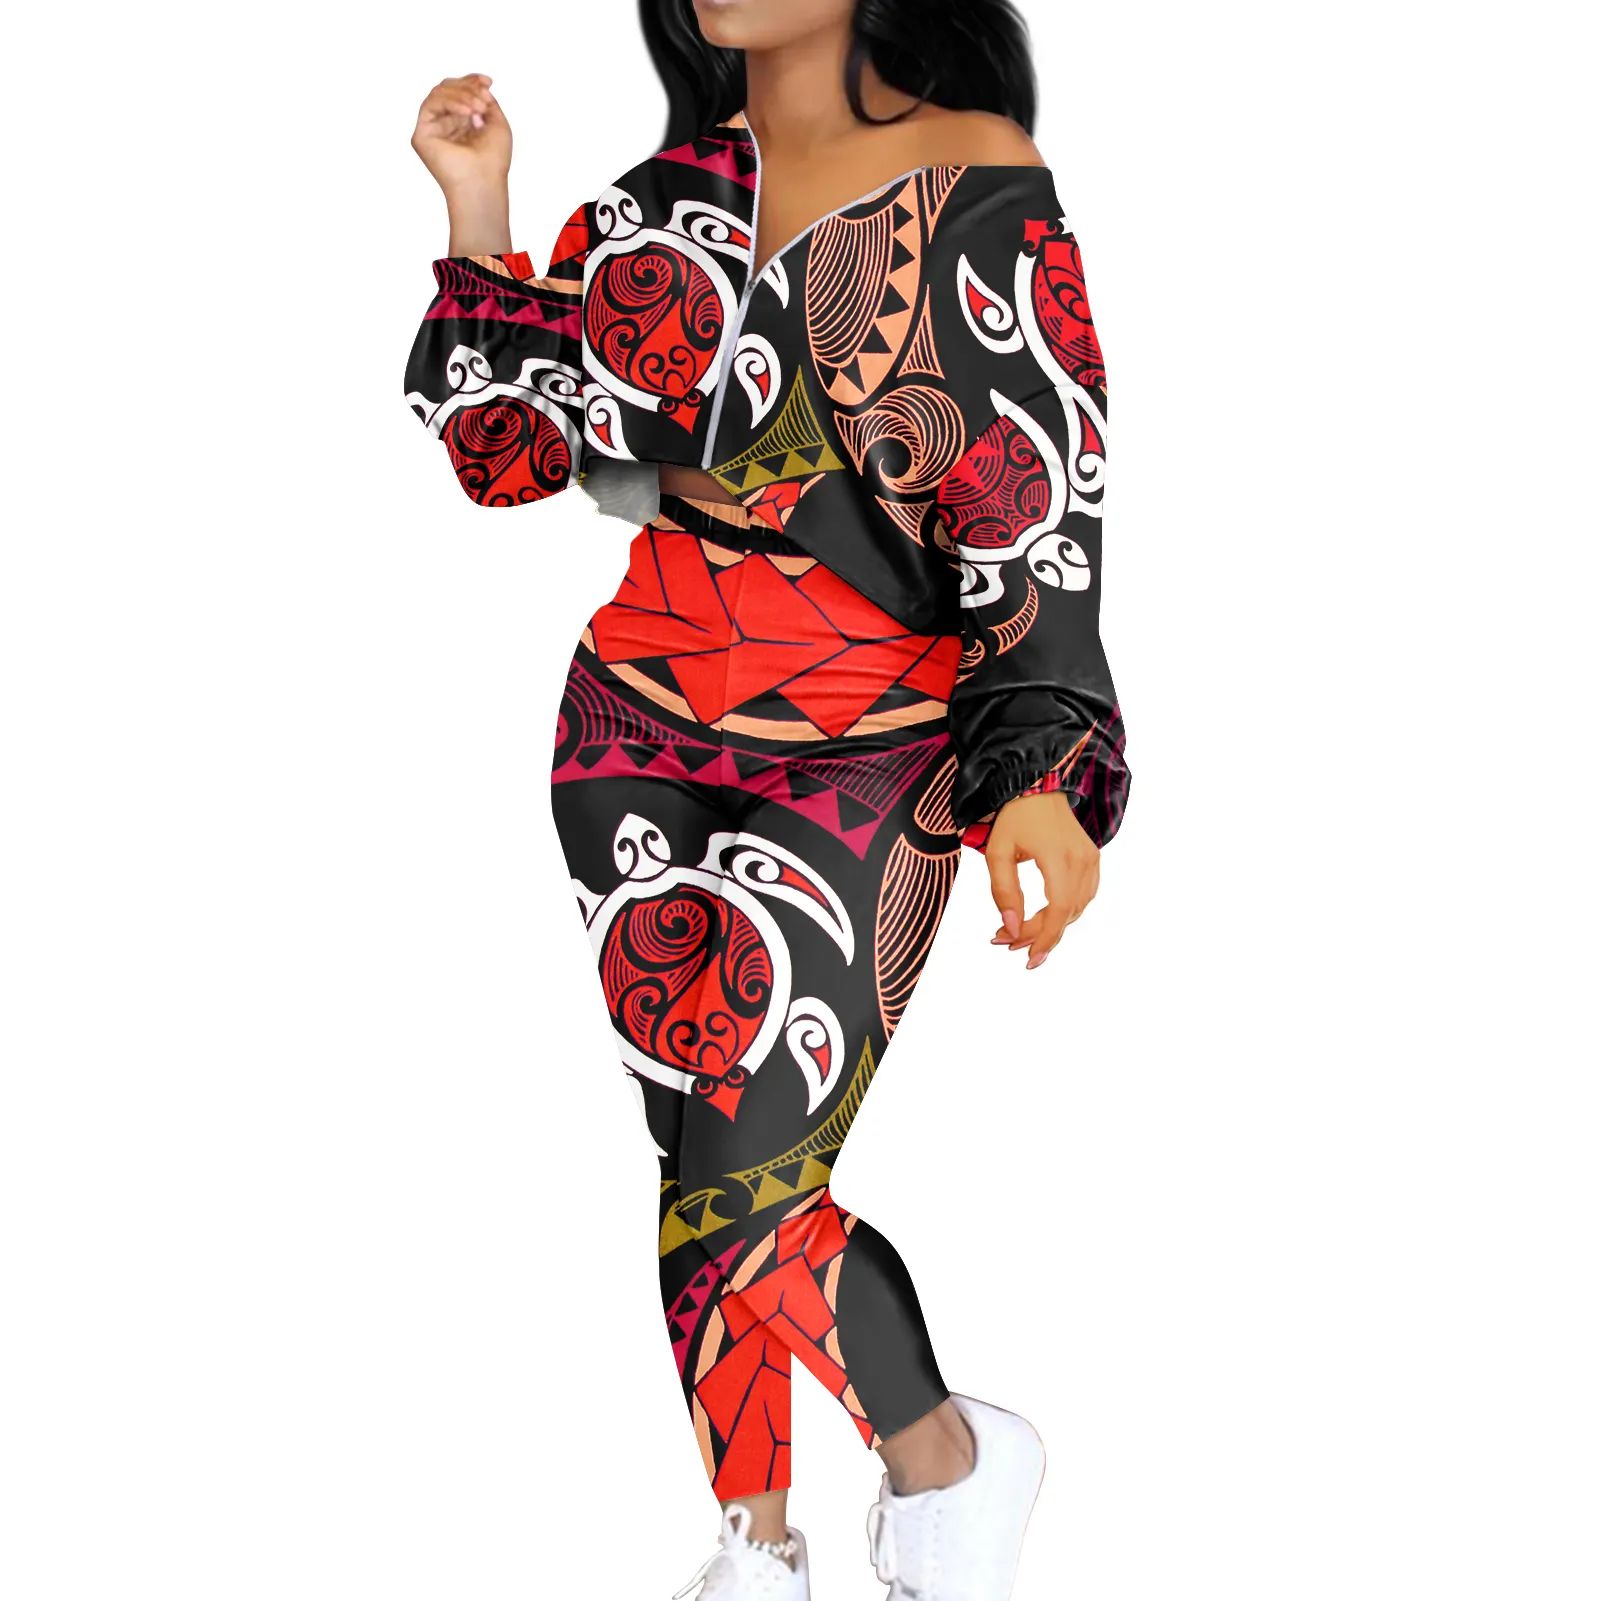 MOQ Personalizado 1 Polinesia Tribal estampado personalizado mujeres Crop Tops 2 piezas conjunto de ropa de talla grande de manga larga traje femenino chándal